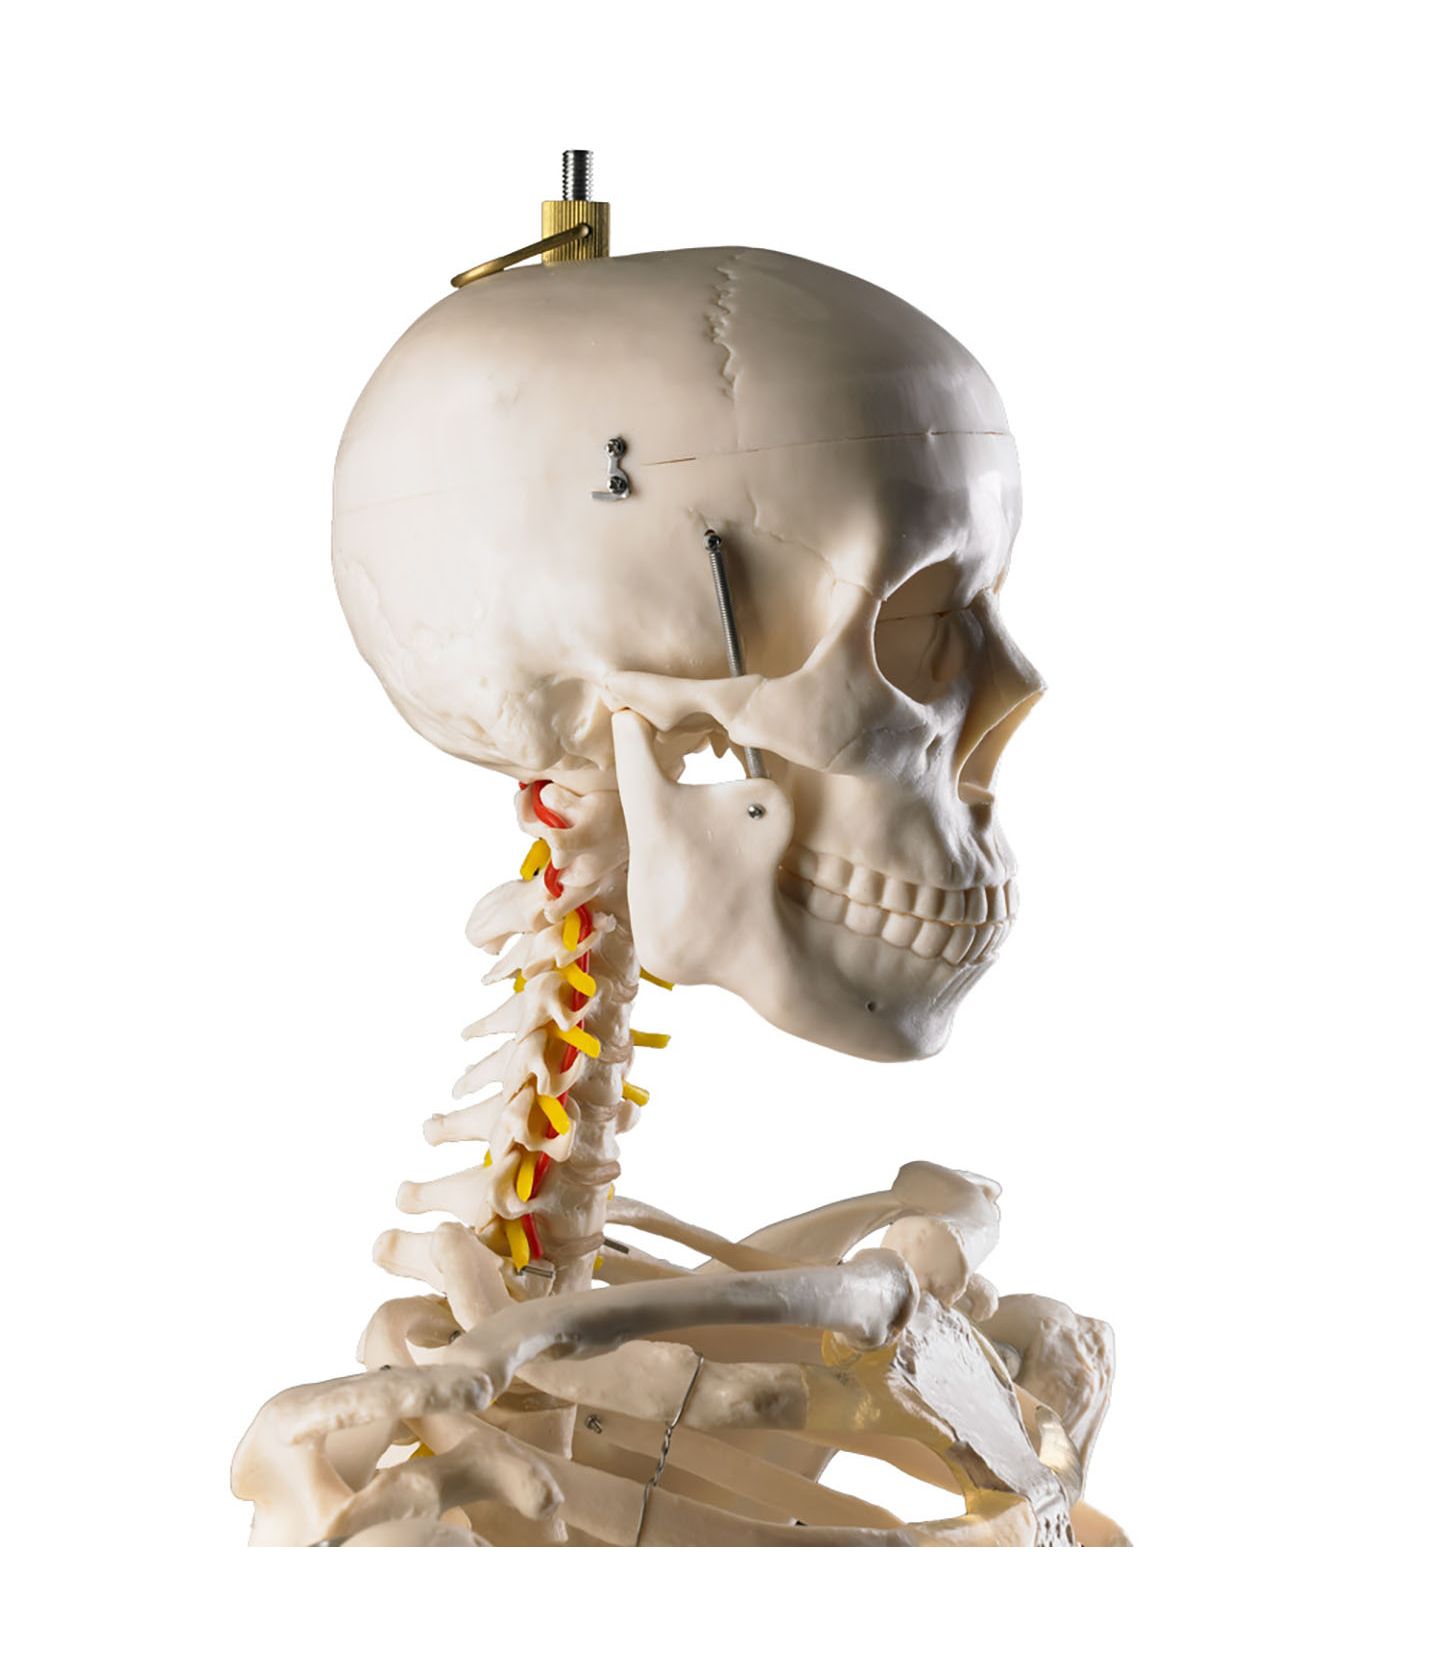 Squelette anatomique humain avec support à roulettes - 180cm - Squelettes  anatomiques - Robé vente matériel médical